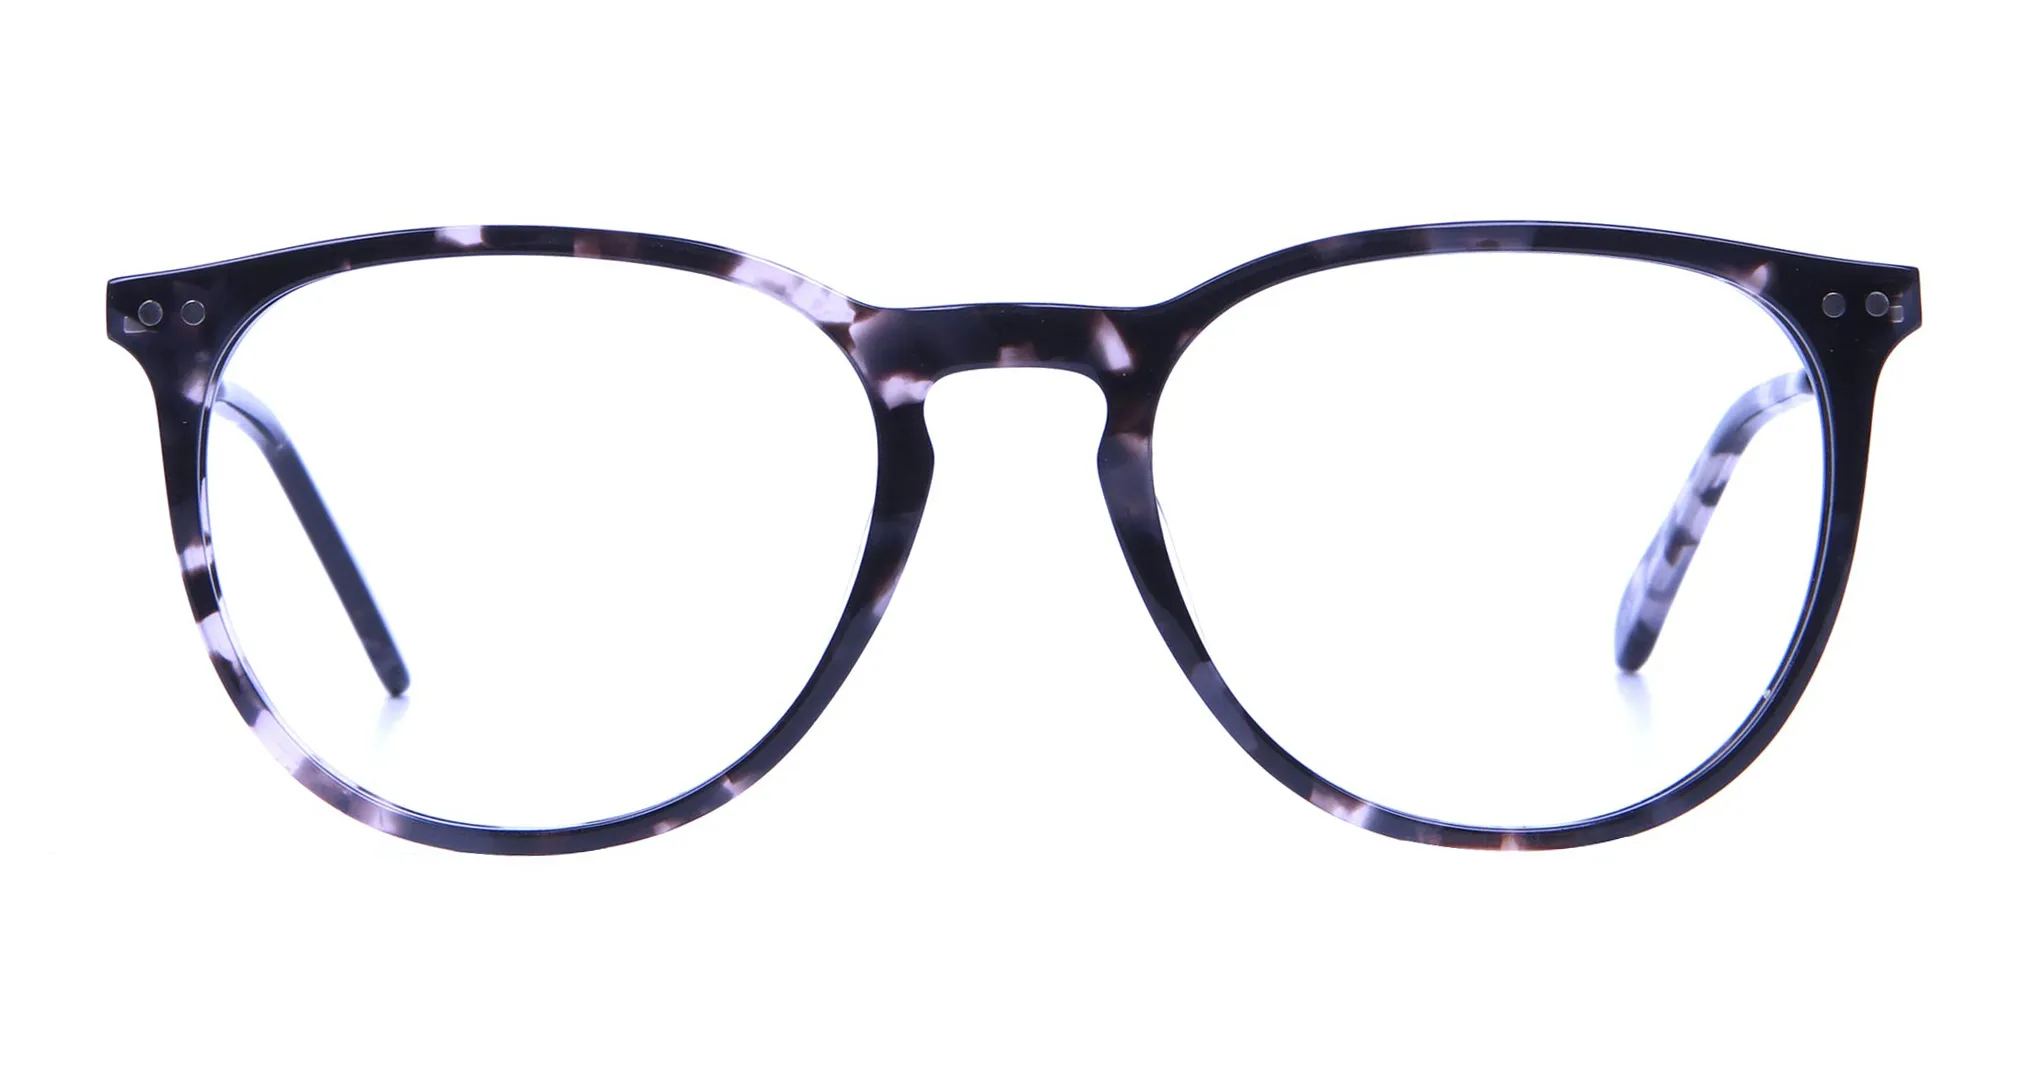 Black and Grey Round Tortoiseshell Eyeglasses -1